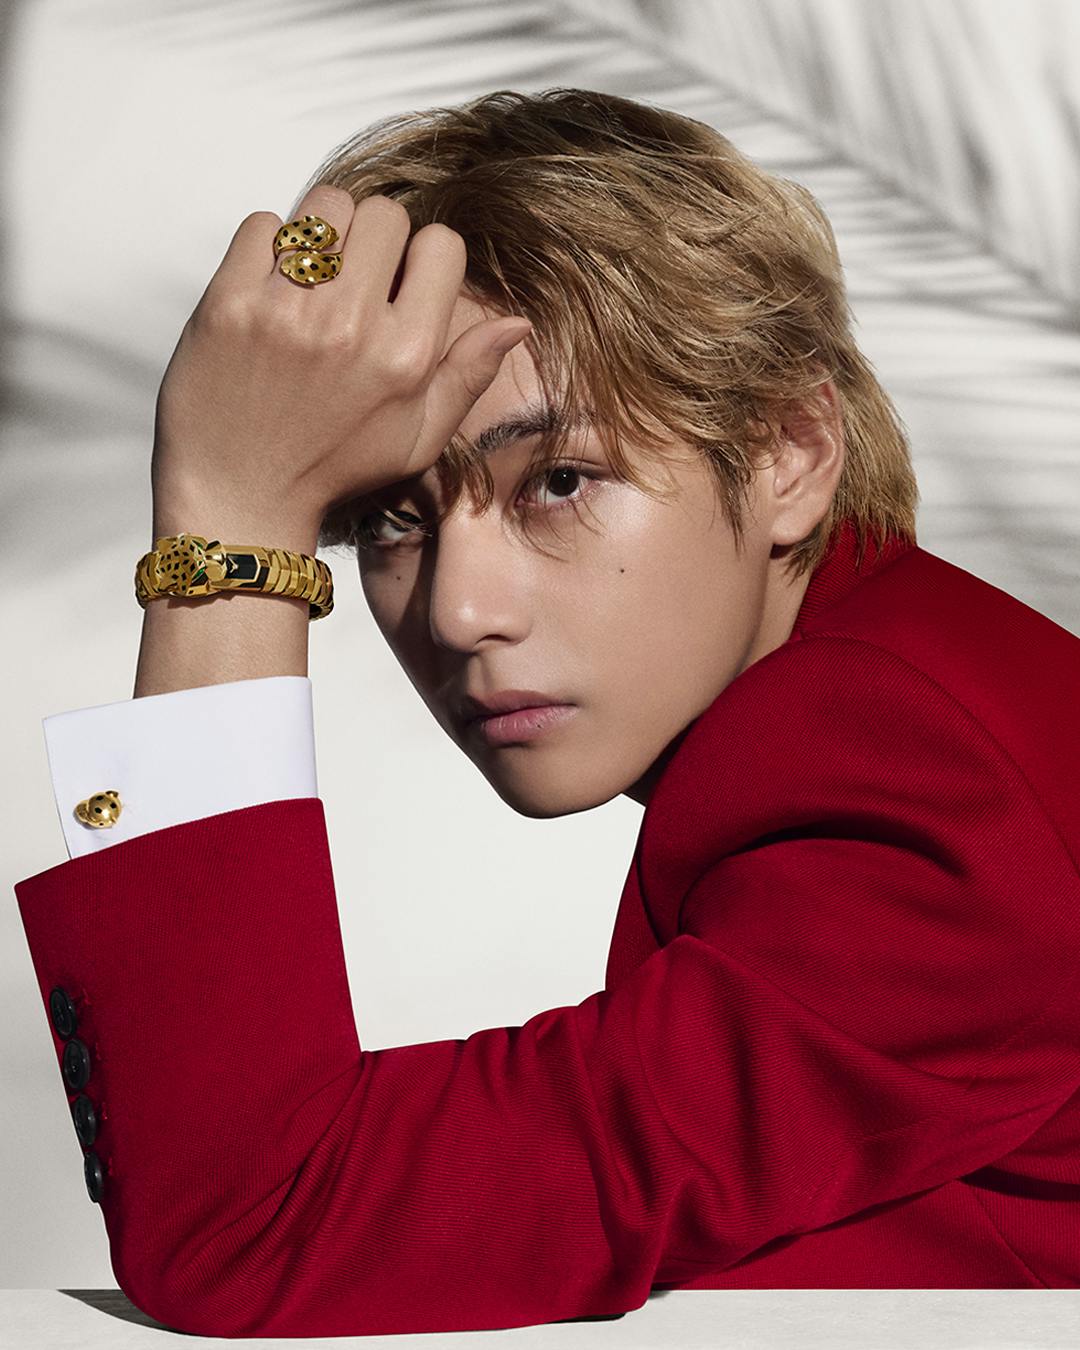 BTS' V Becomes Cartier's Newest Brand Ambassador